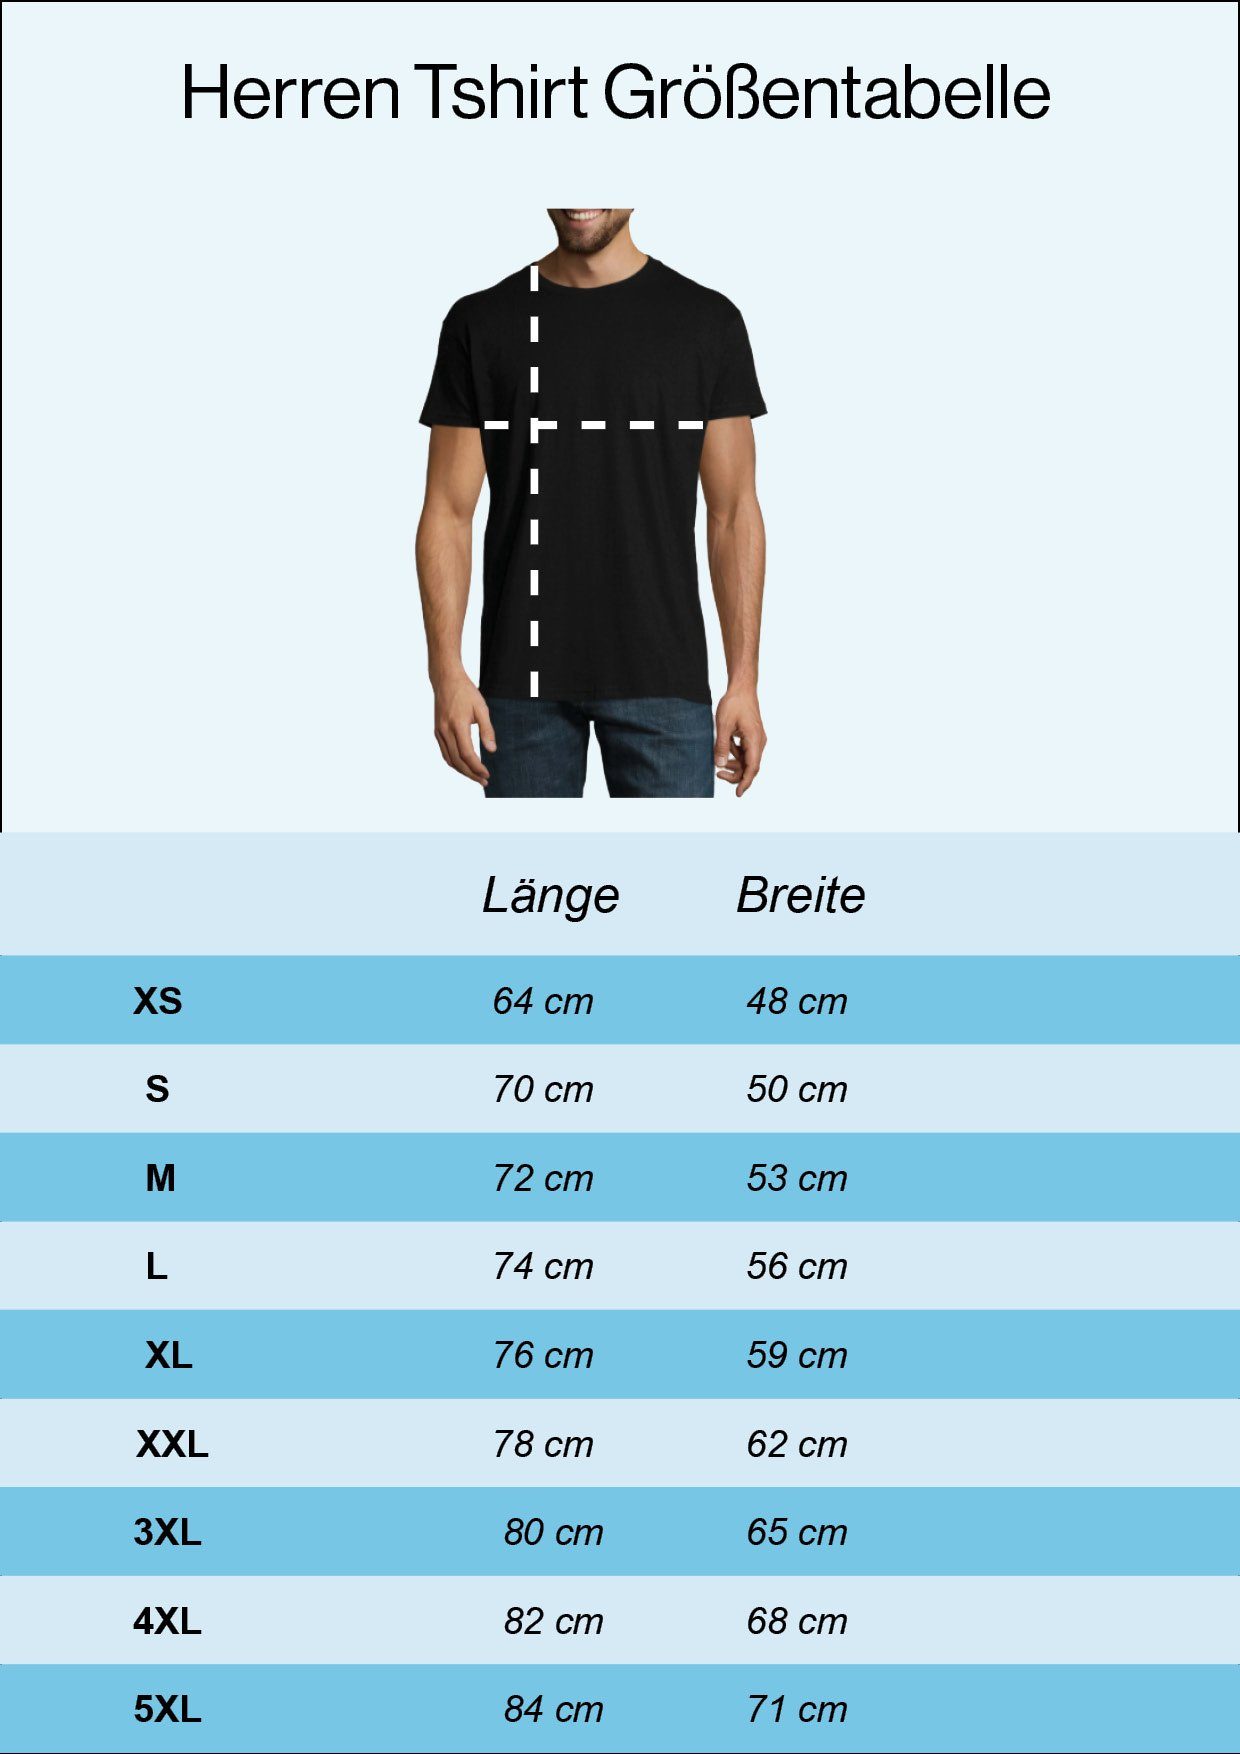 Youth Sangre Weiß Shirt trendigem Por Herren Sangre Designz T-Shirt mit Frontprint